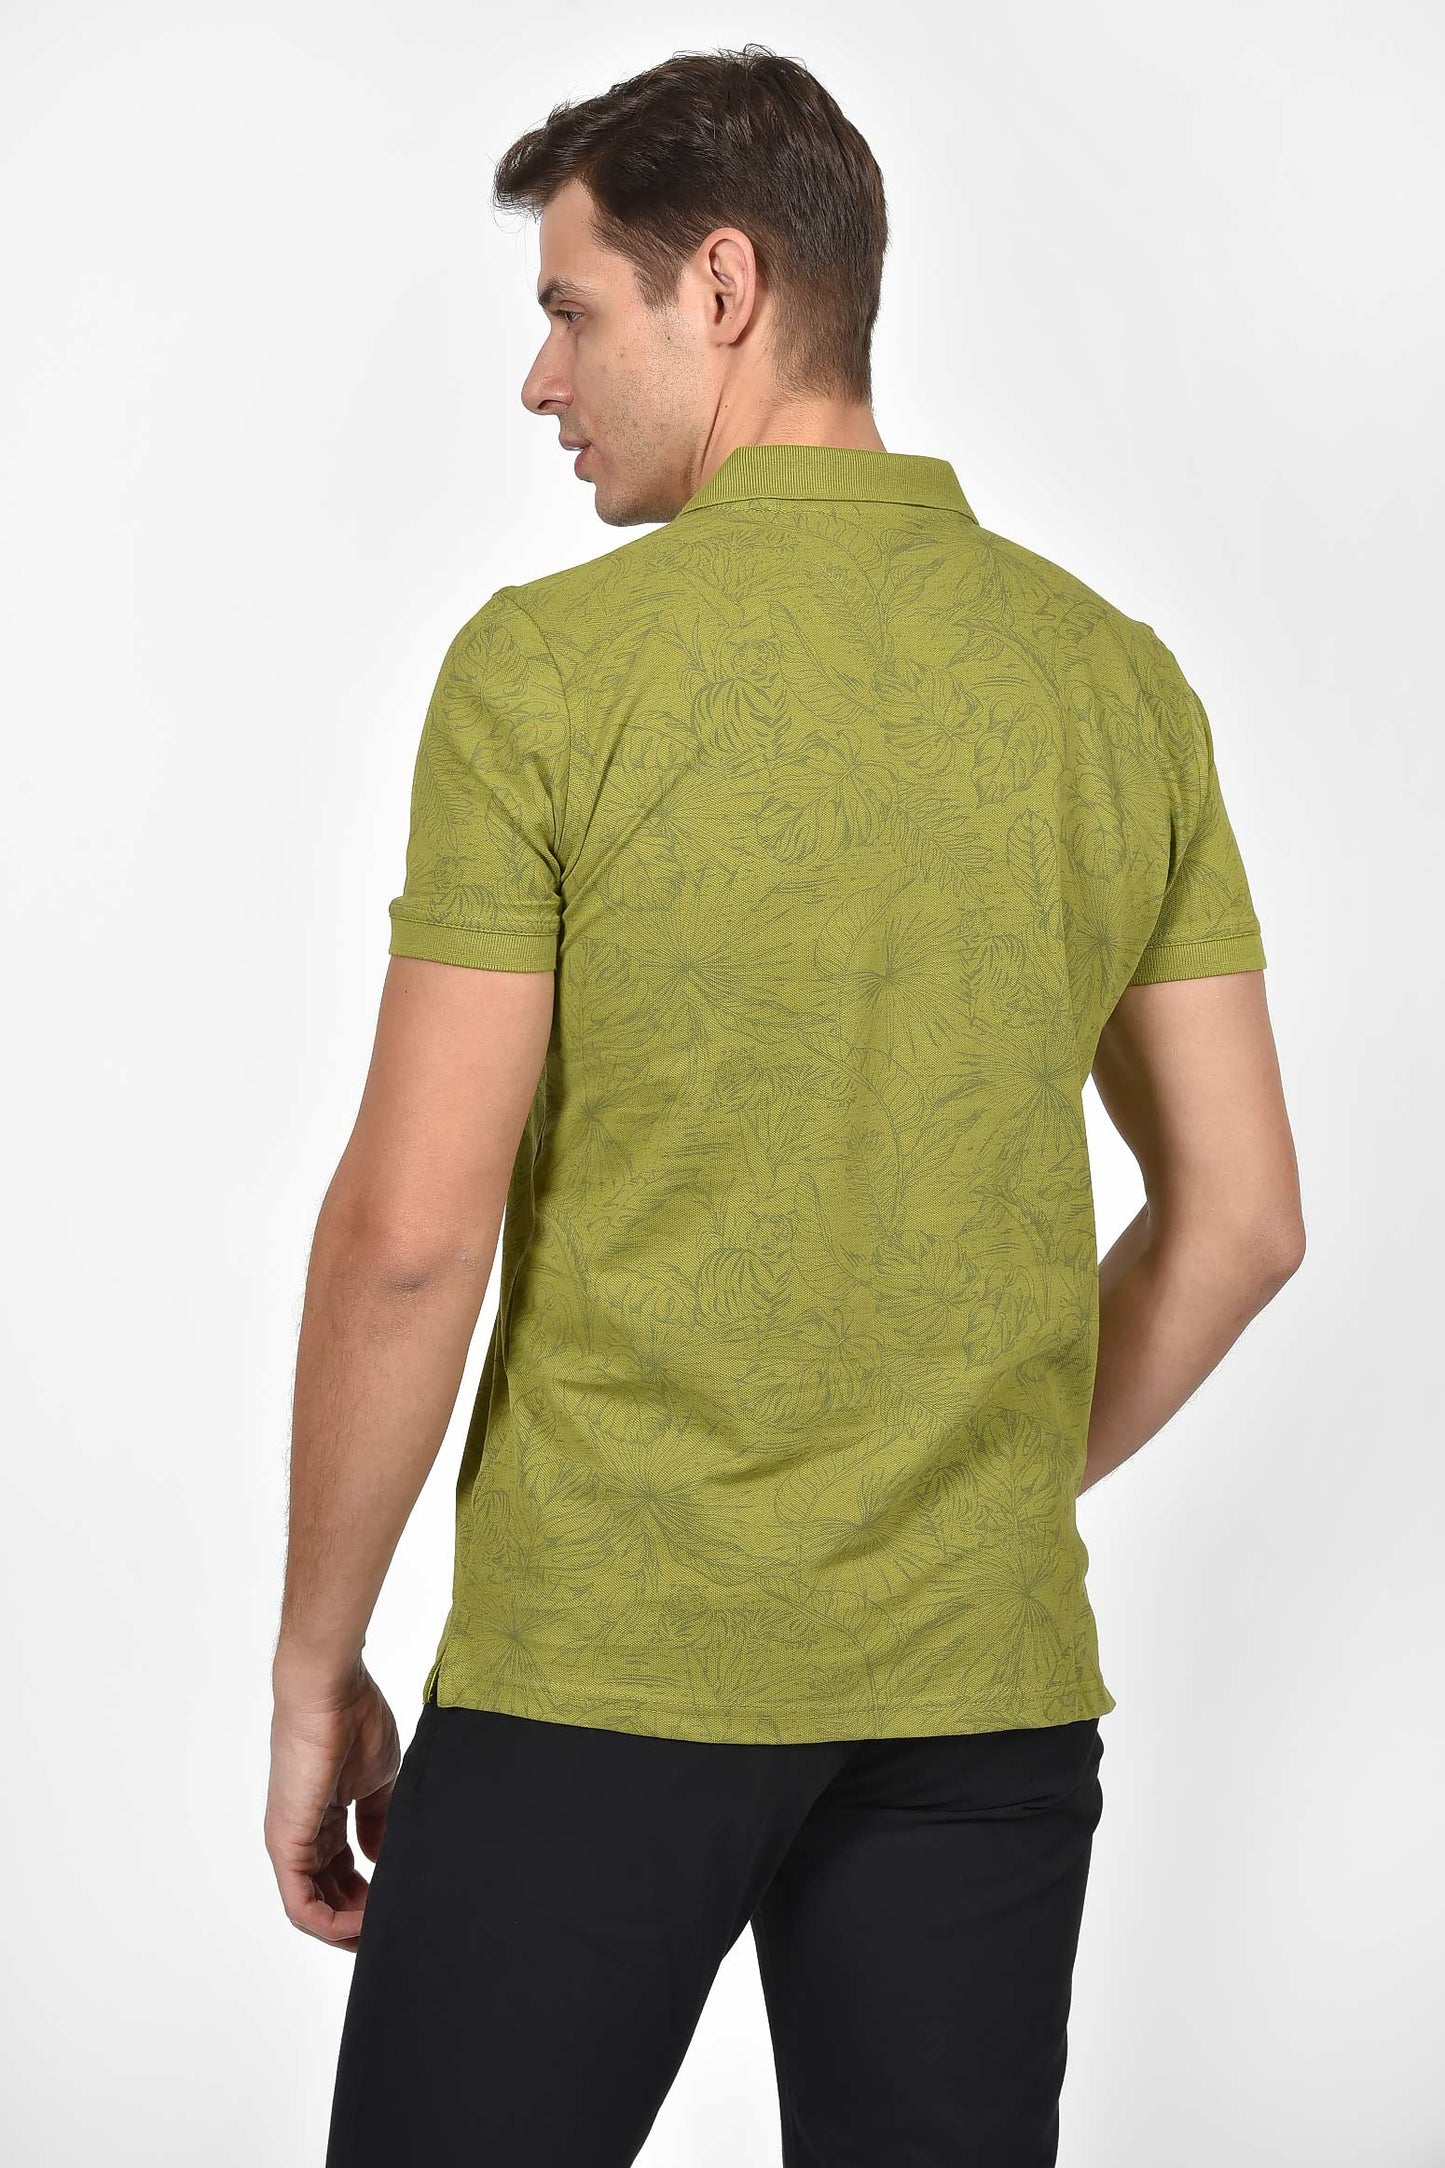 ανδρική-μπλούζα-polo-με-σχέδιο-μεγάλα-φύλλα